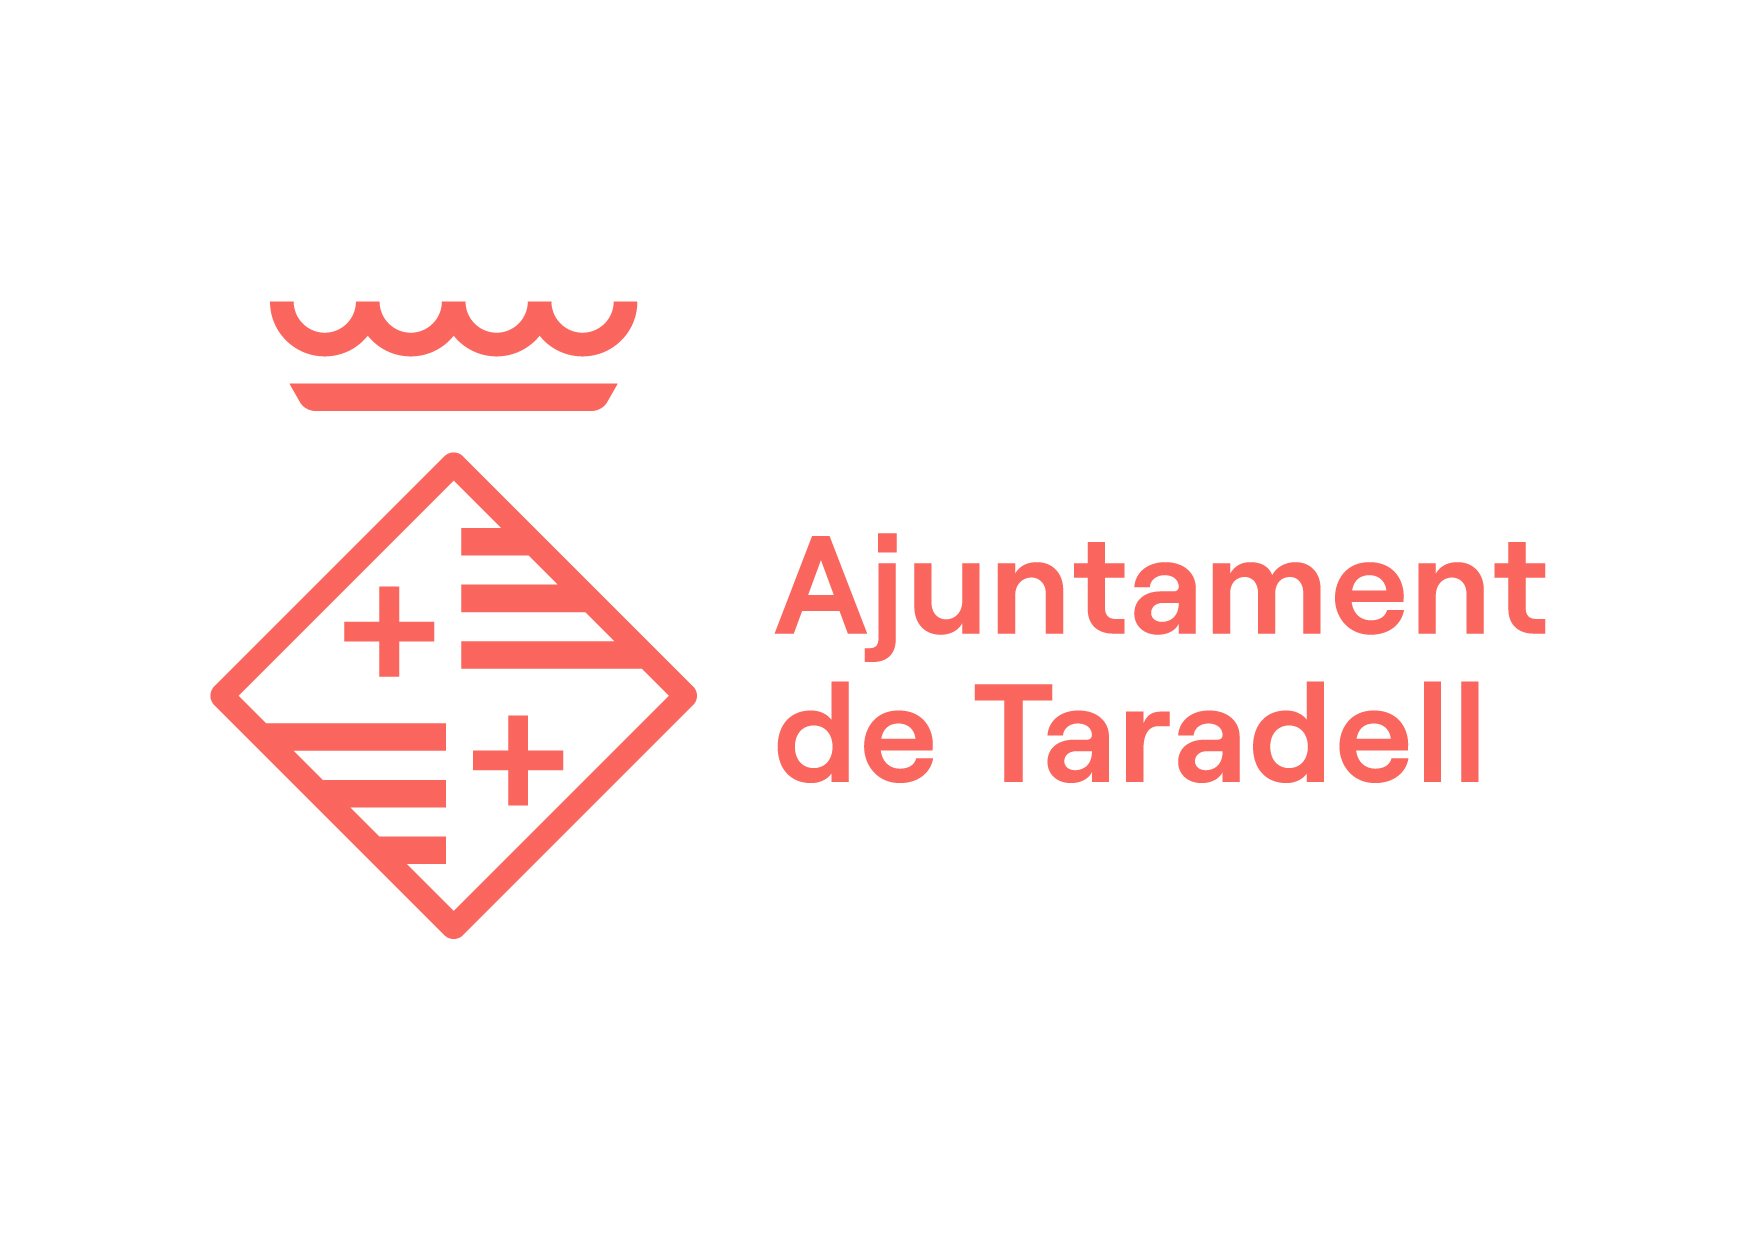 Logotip Corporatiu - Ajuntament de Taradell